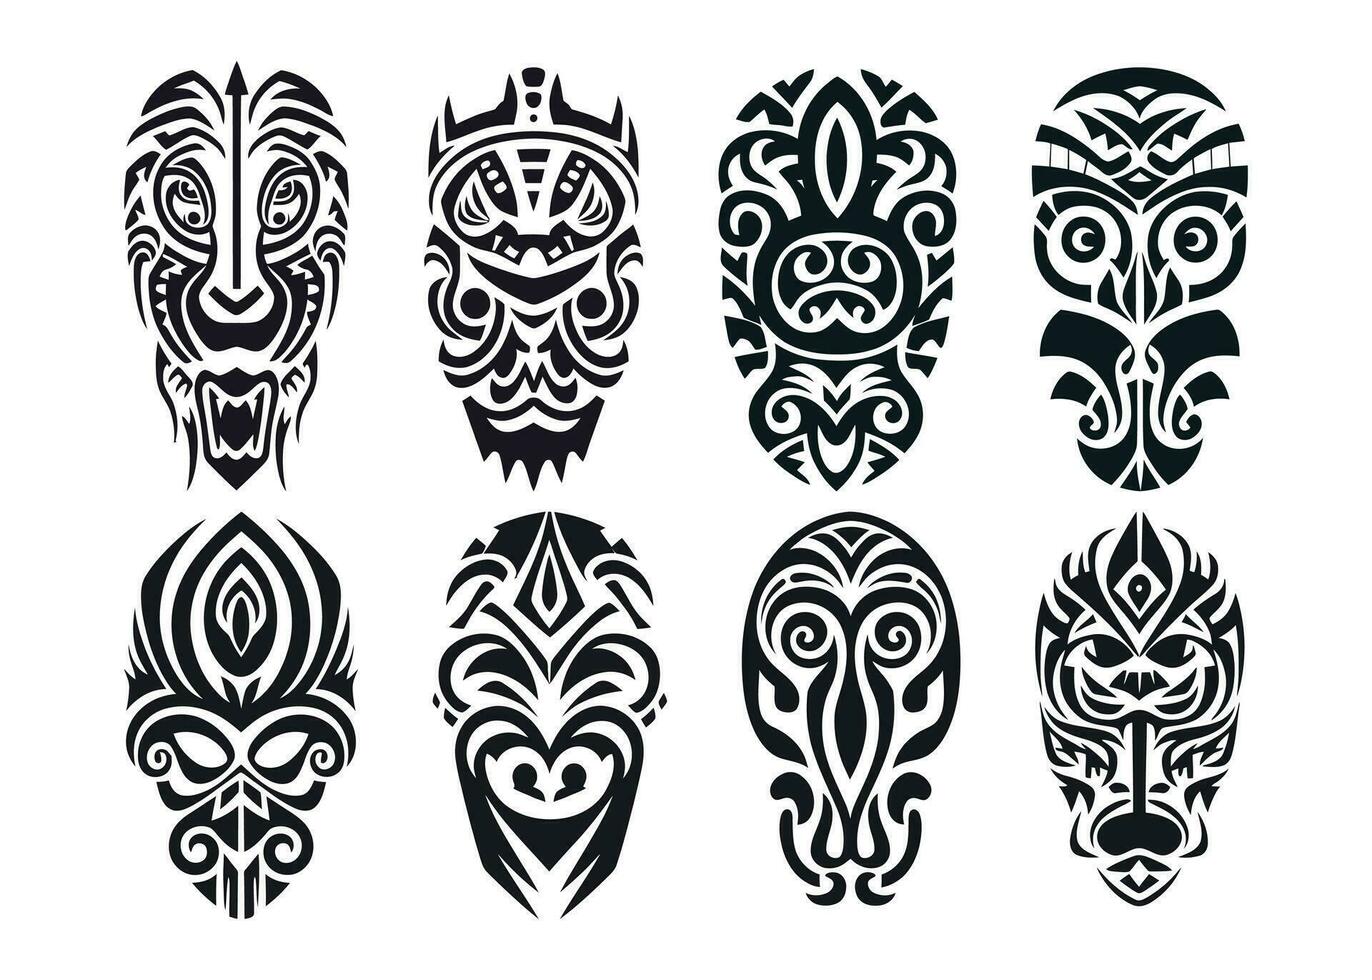 mano dibujado conjunto de tatuaje bosquejo maorí estilo para pierna o hombro vector